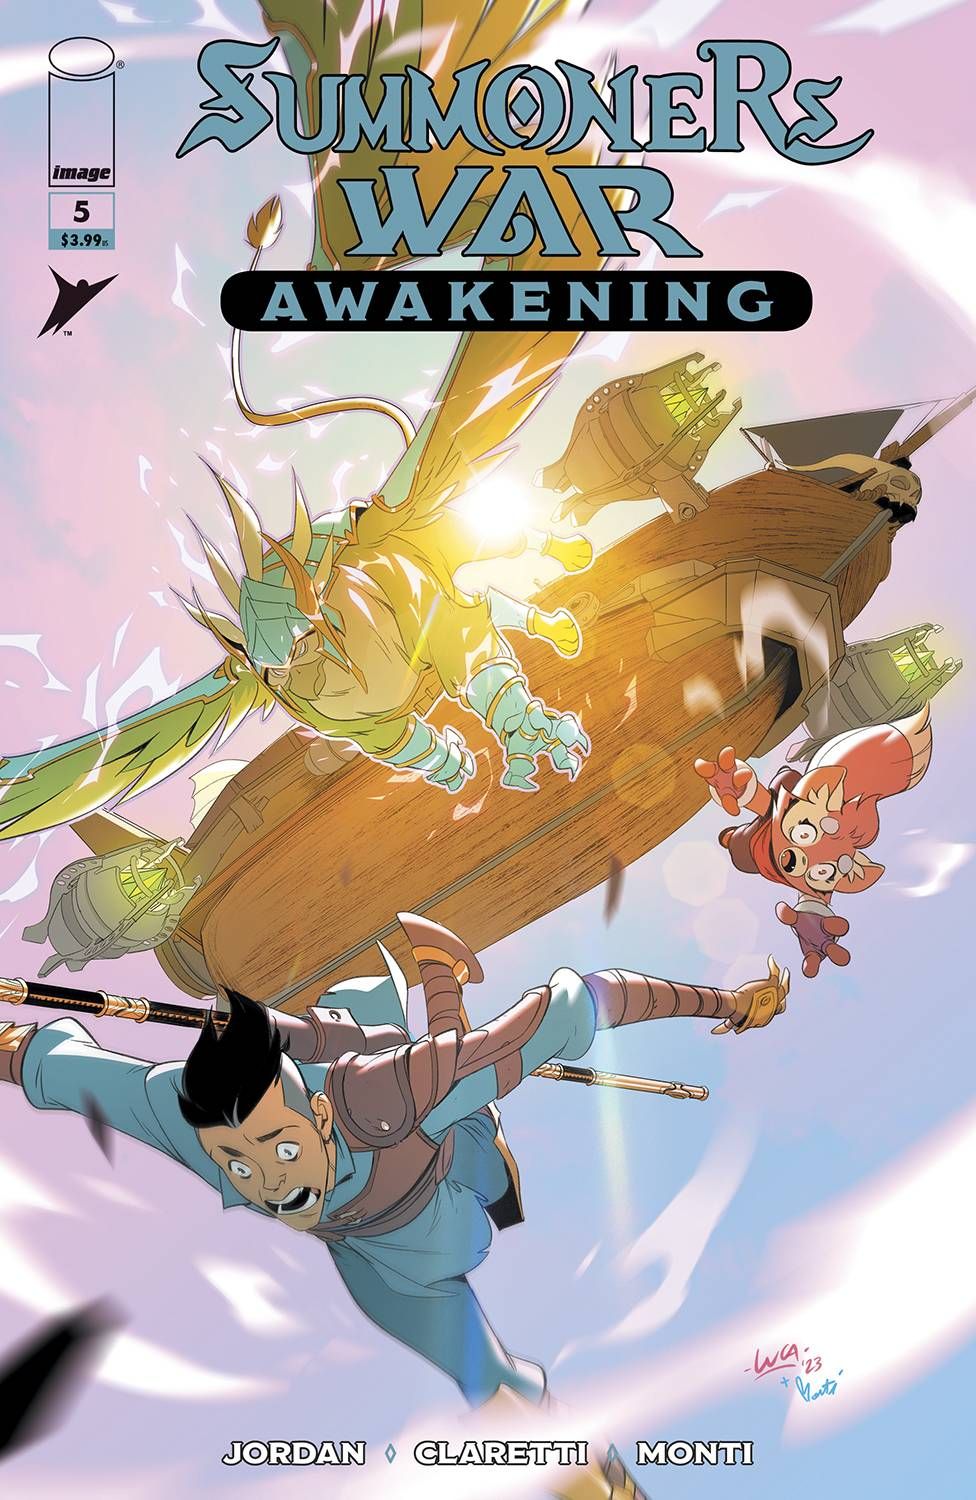 Summoner's War: Awakening #5 Comic